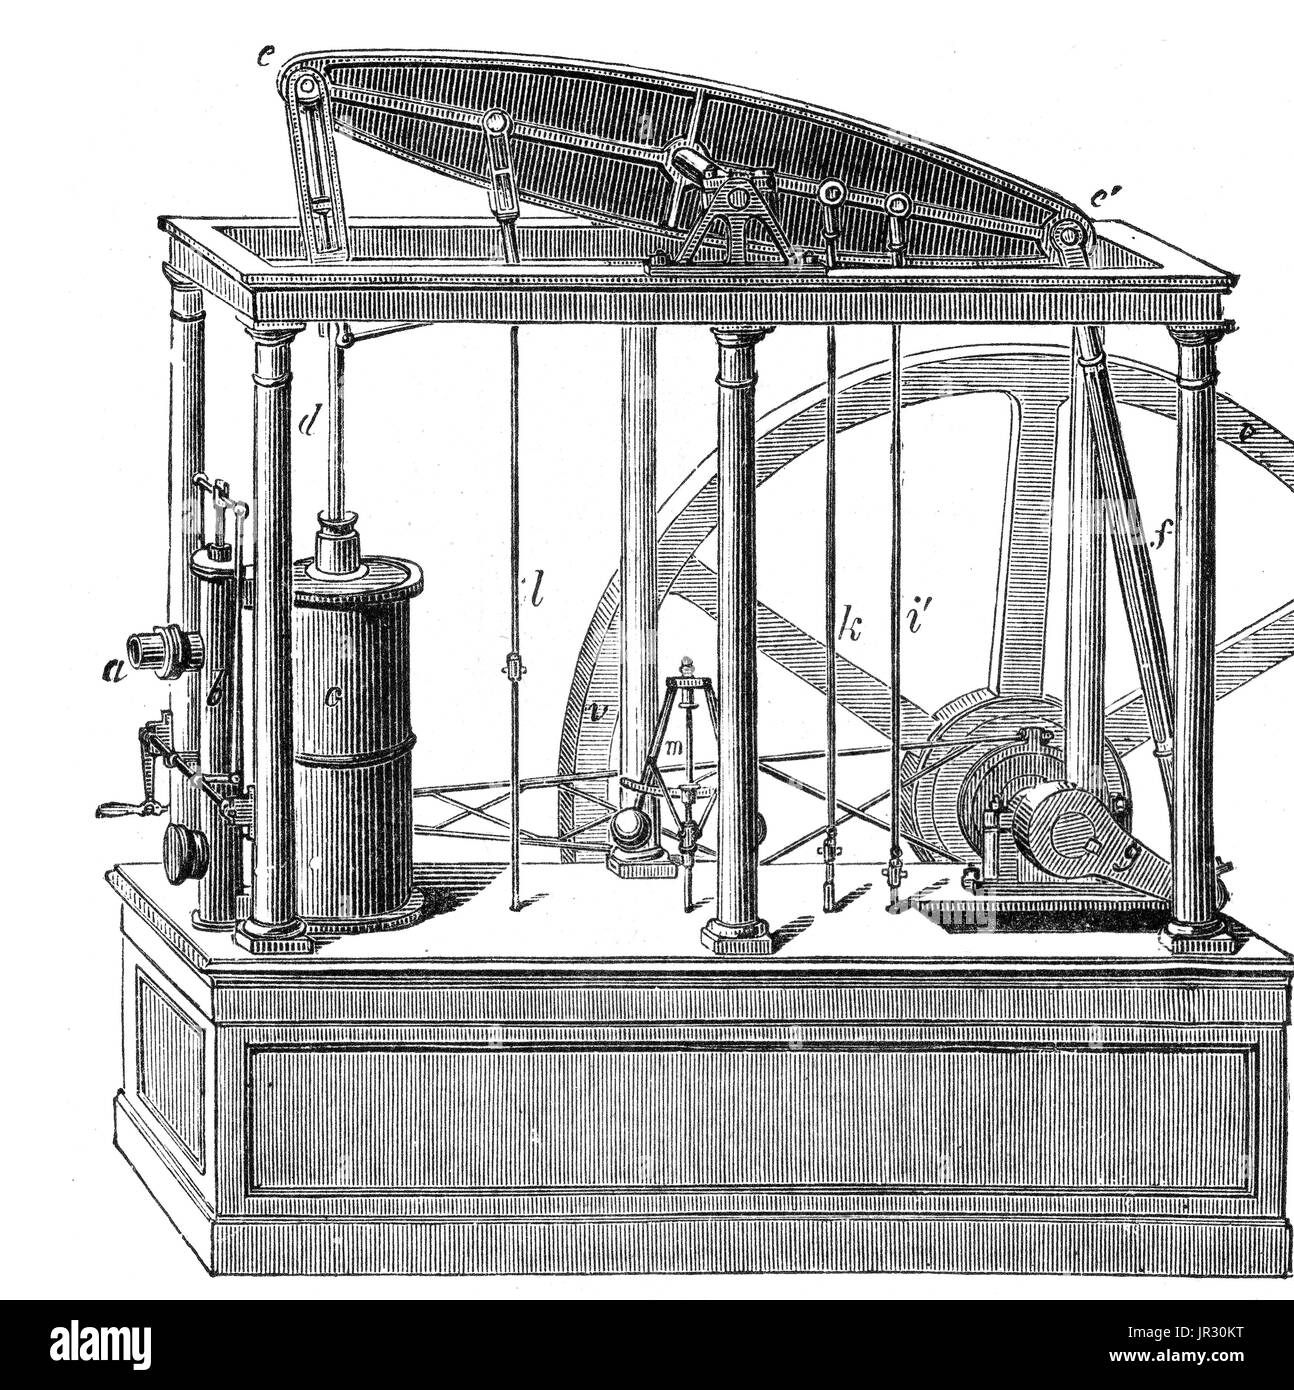 Изобрел паровую машину двойного действия. 1769 Год паровой двигатель Уатт.